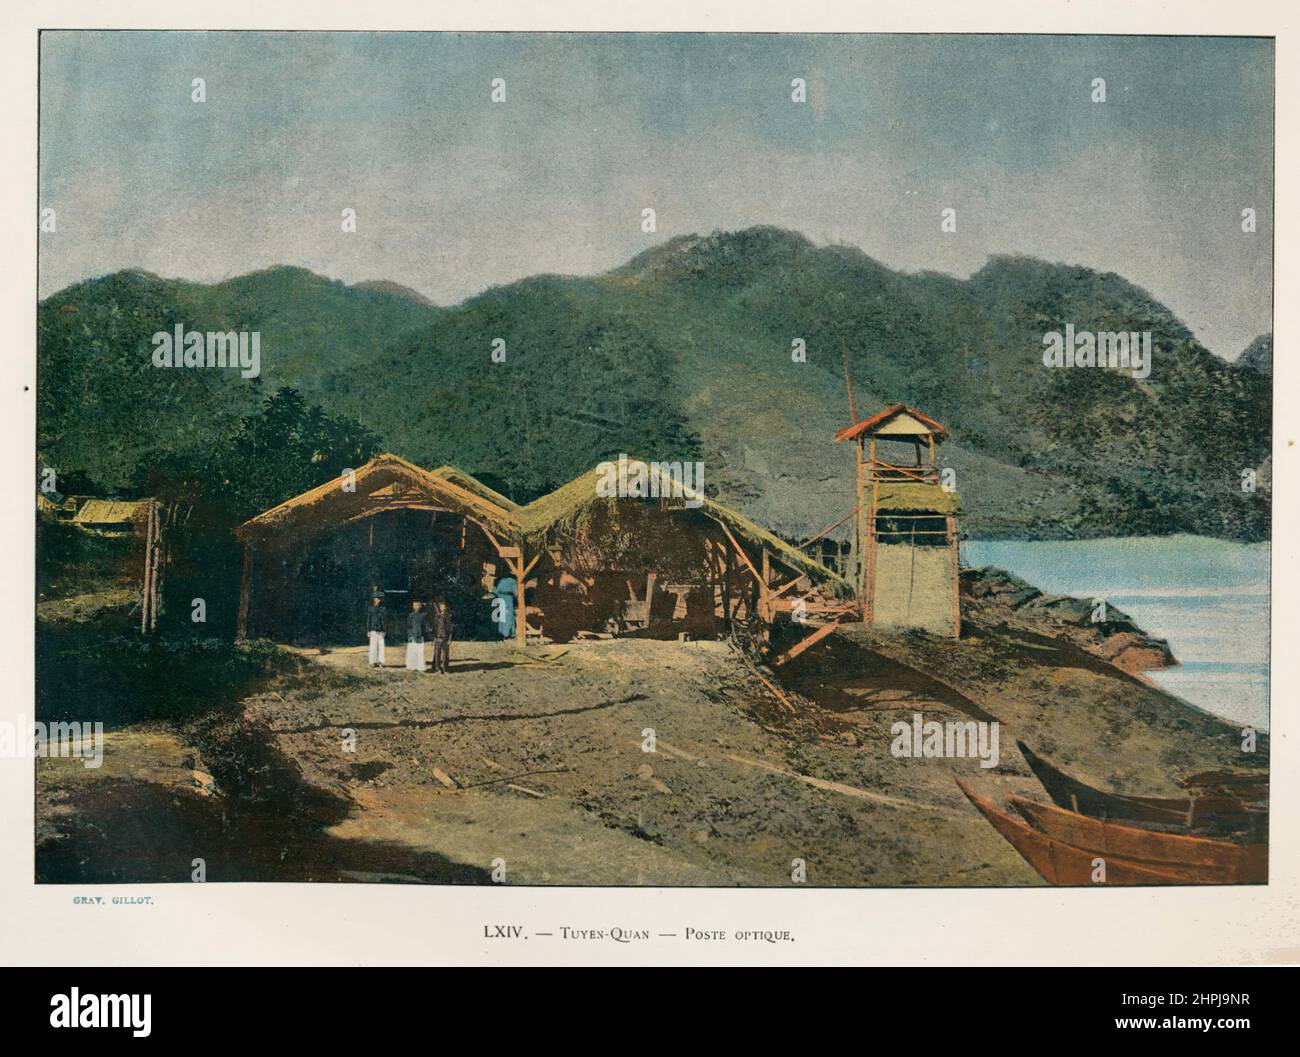 Autour Du Monde Tonkin - Vietnam -  1895 - 1900 Sites Et Paysages  (1)  - 19 th century french colored photography print Stock Photo